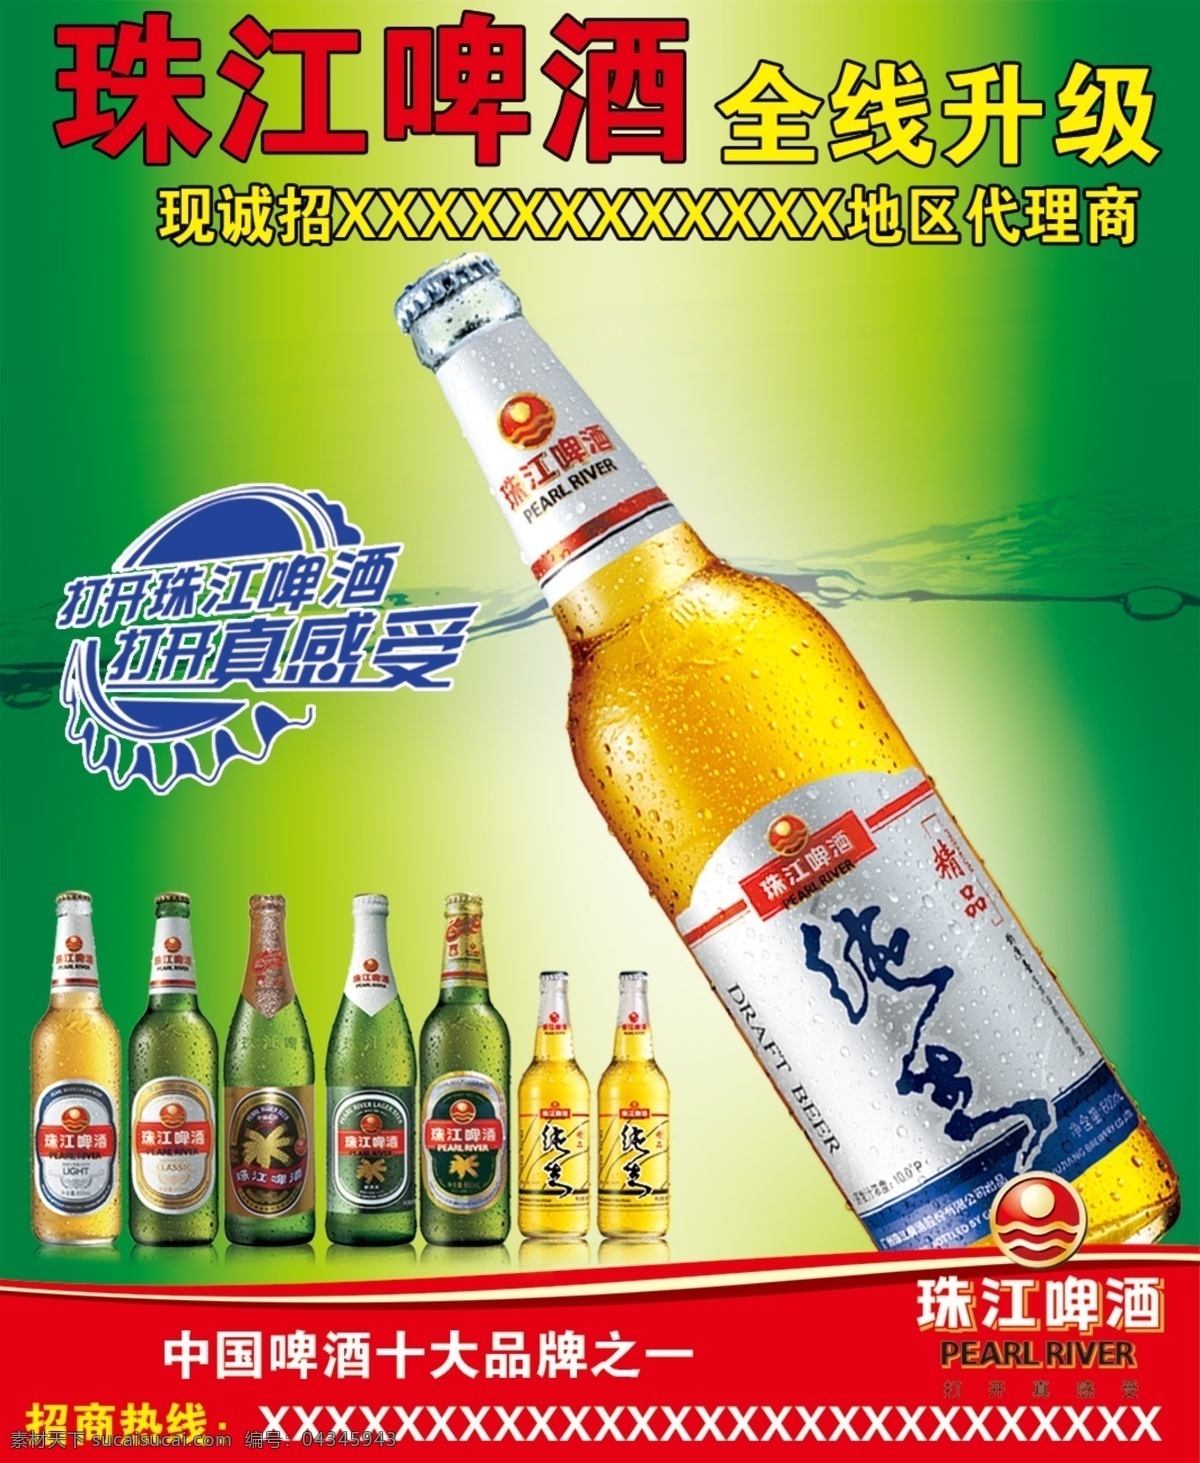 珠江啤酒 边框 啤酒样品 创意啤酒盖 啤酒宣传海报 广告设计模板 源文件